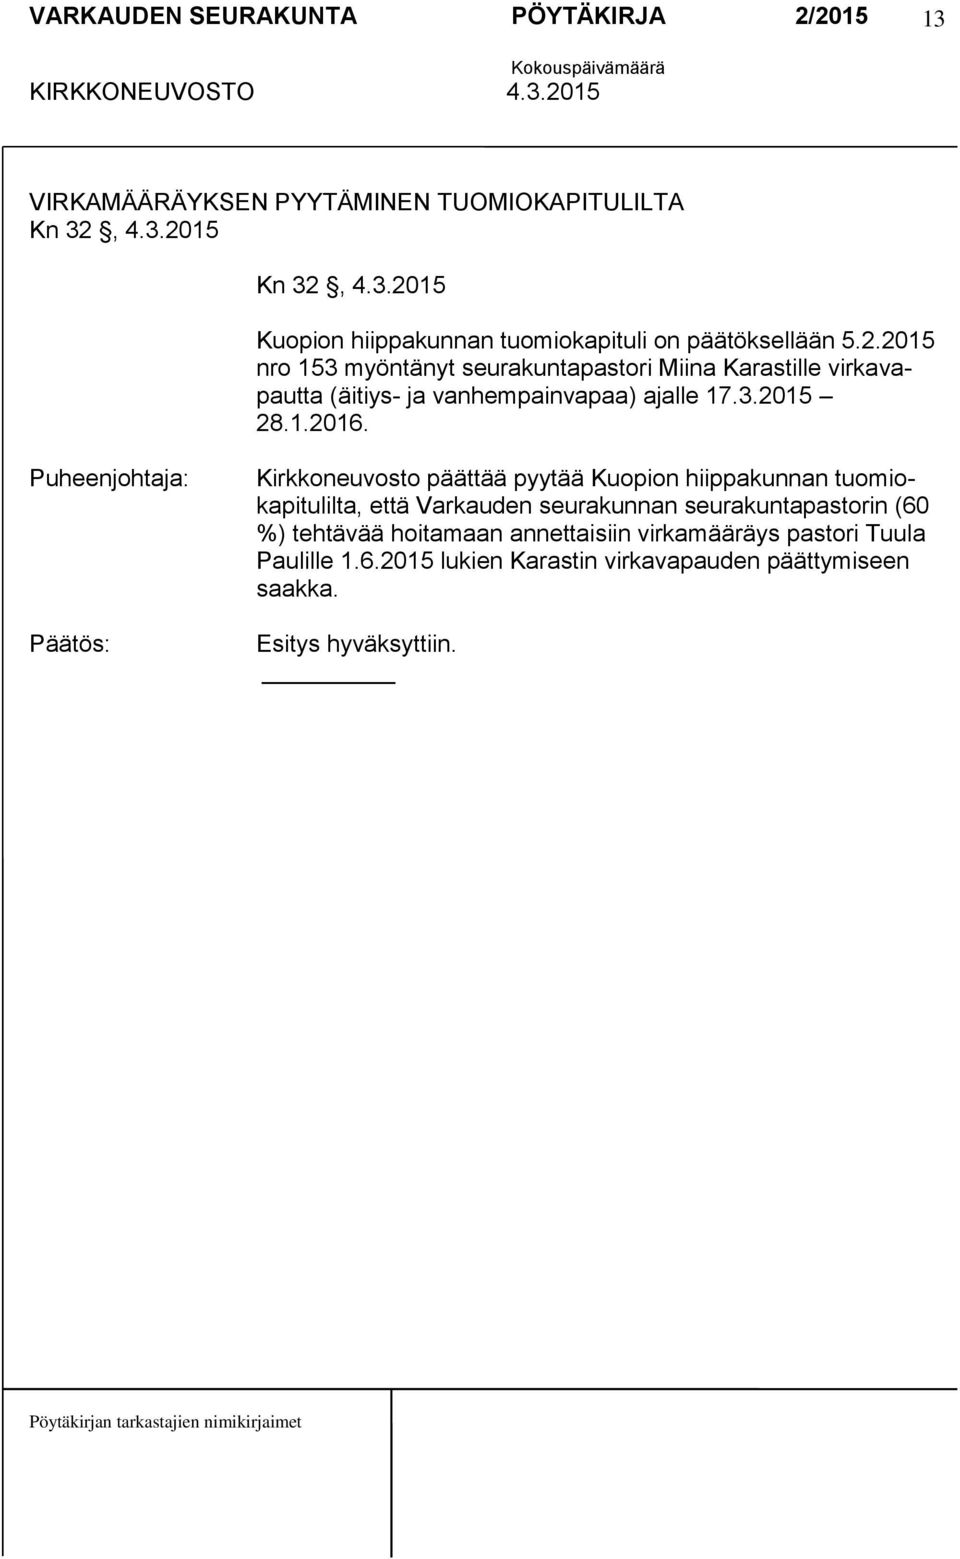 Kirkkoneuvosto päättää pyytää Kuopion hiippakunnan tuomiokapitulilta, että Varkauden seurakunnan seurakuntapastorin (60 %) tehtävää